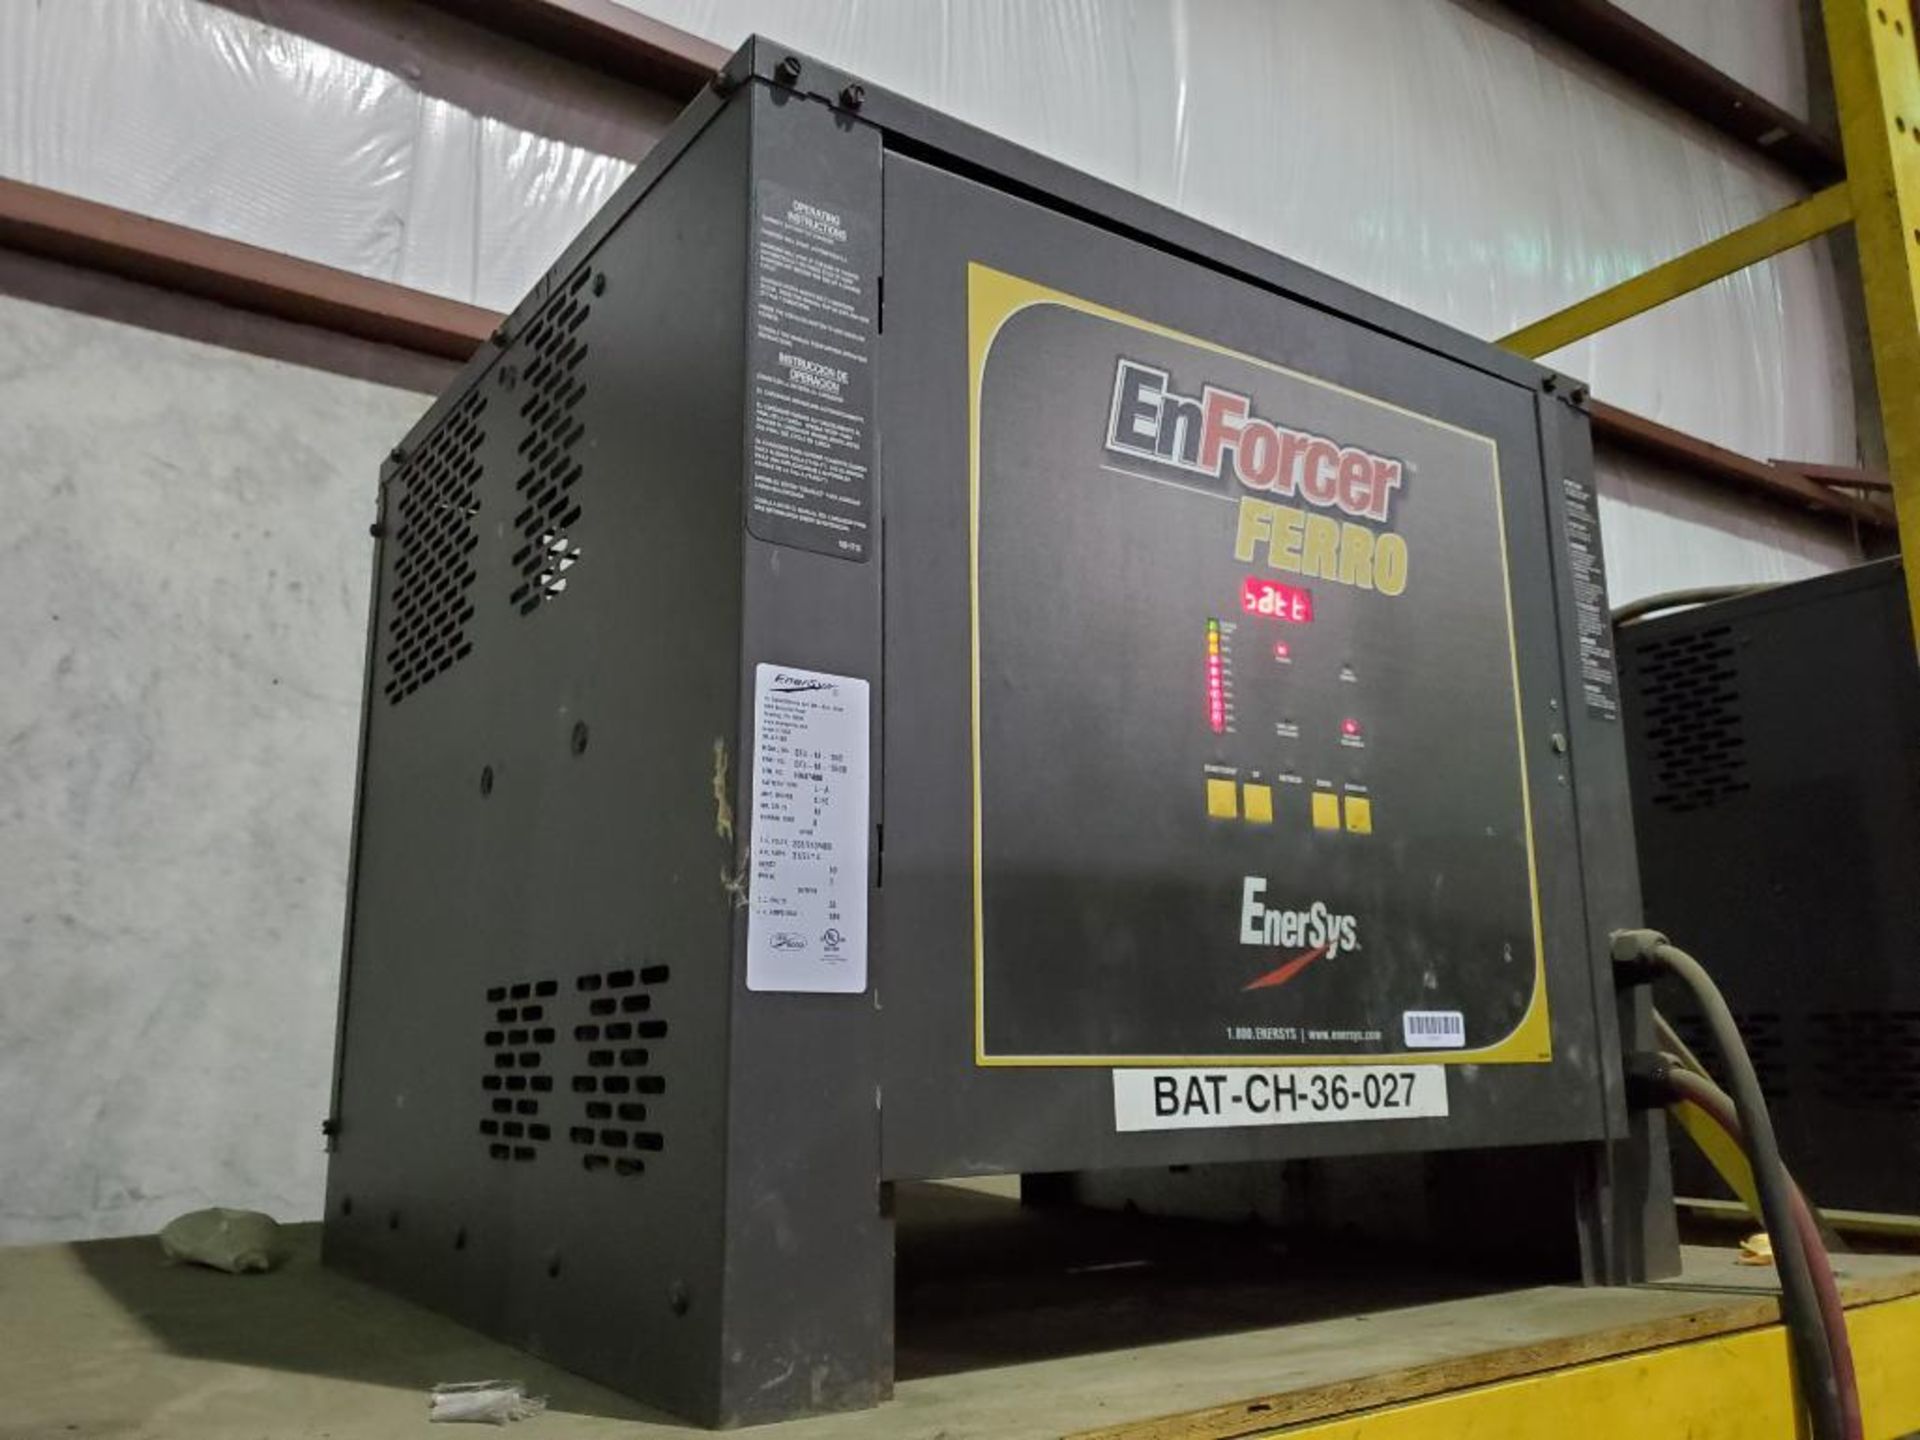 Enersys Enforcer Ferro 36V Forklift Battery Charger, Model EF3-18-1050, 189 DC Amps Max. - Image 2 of 3